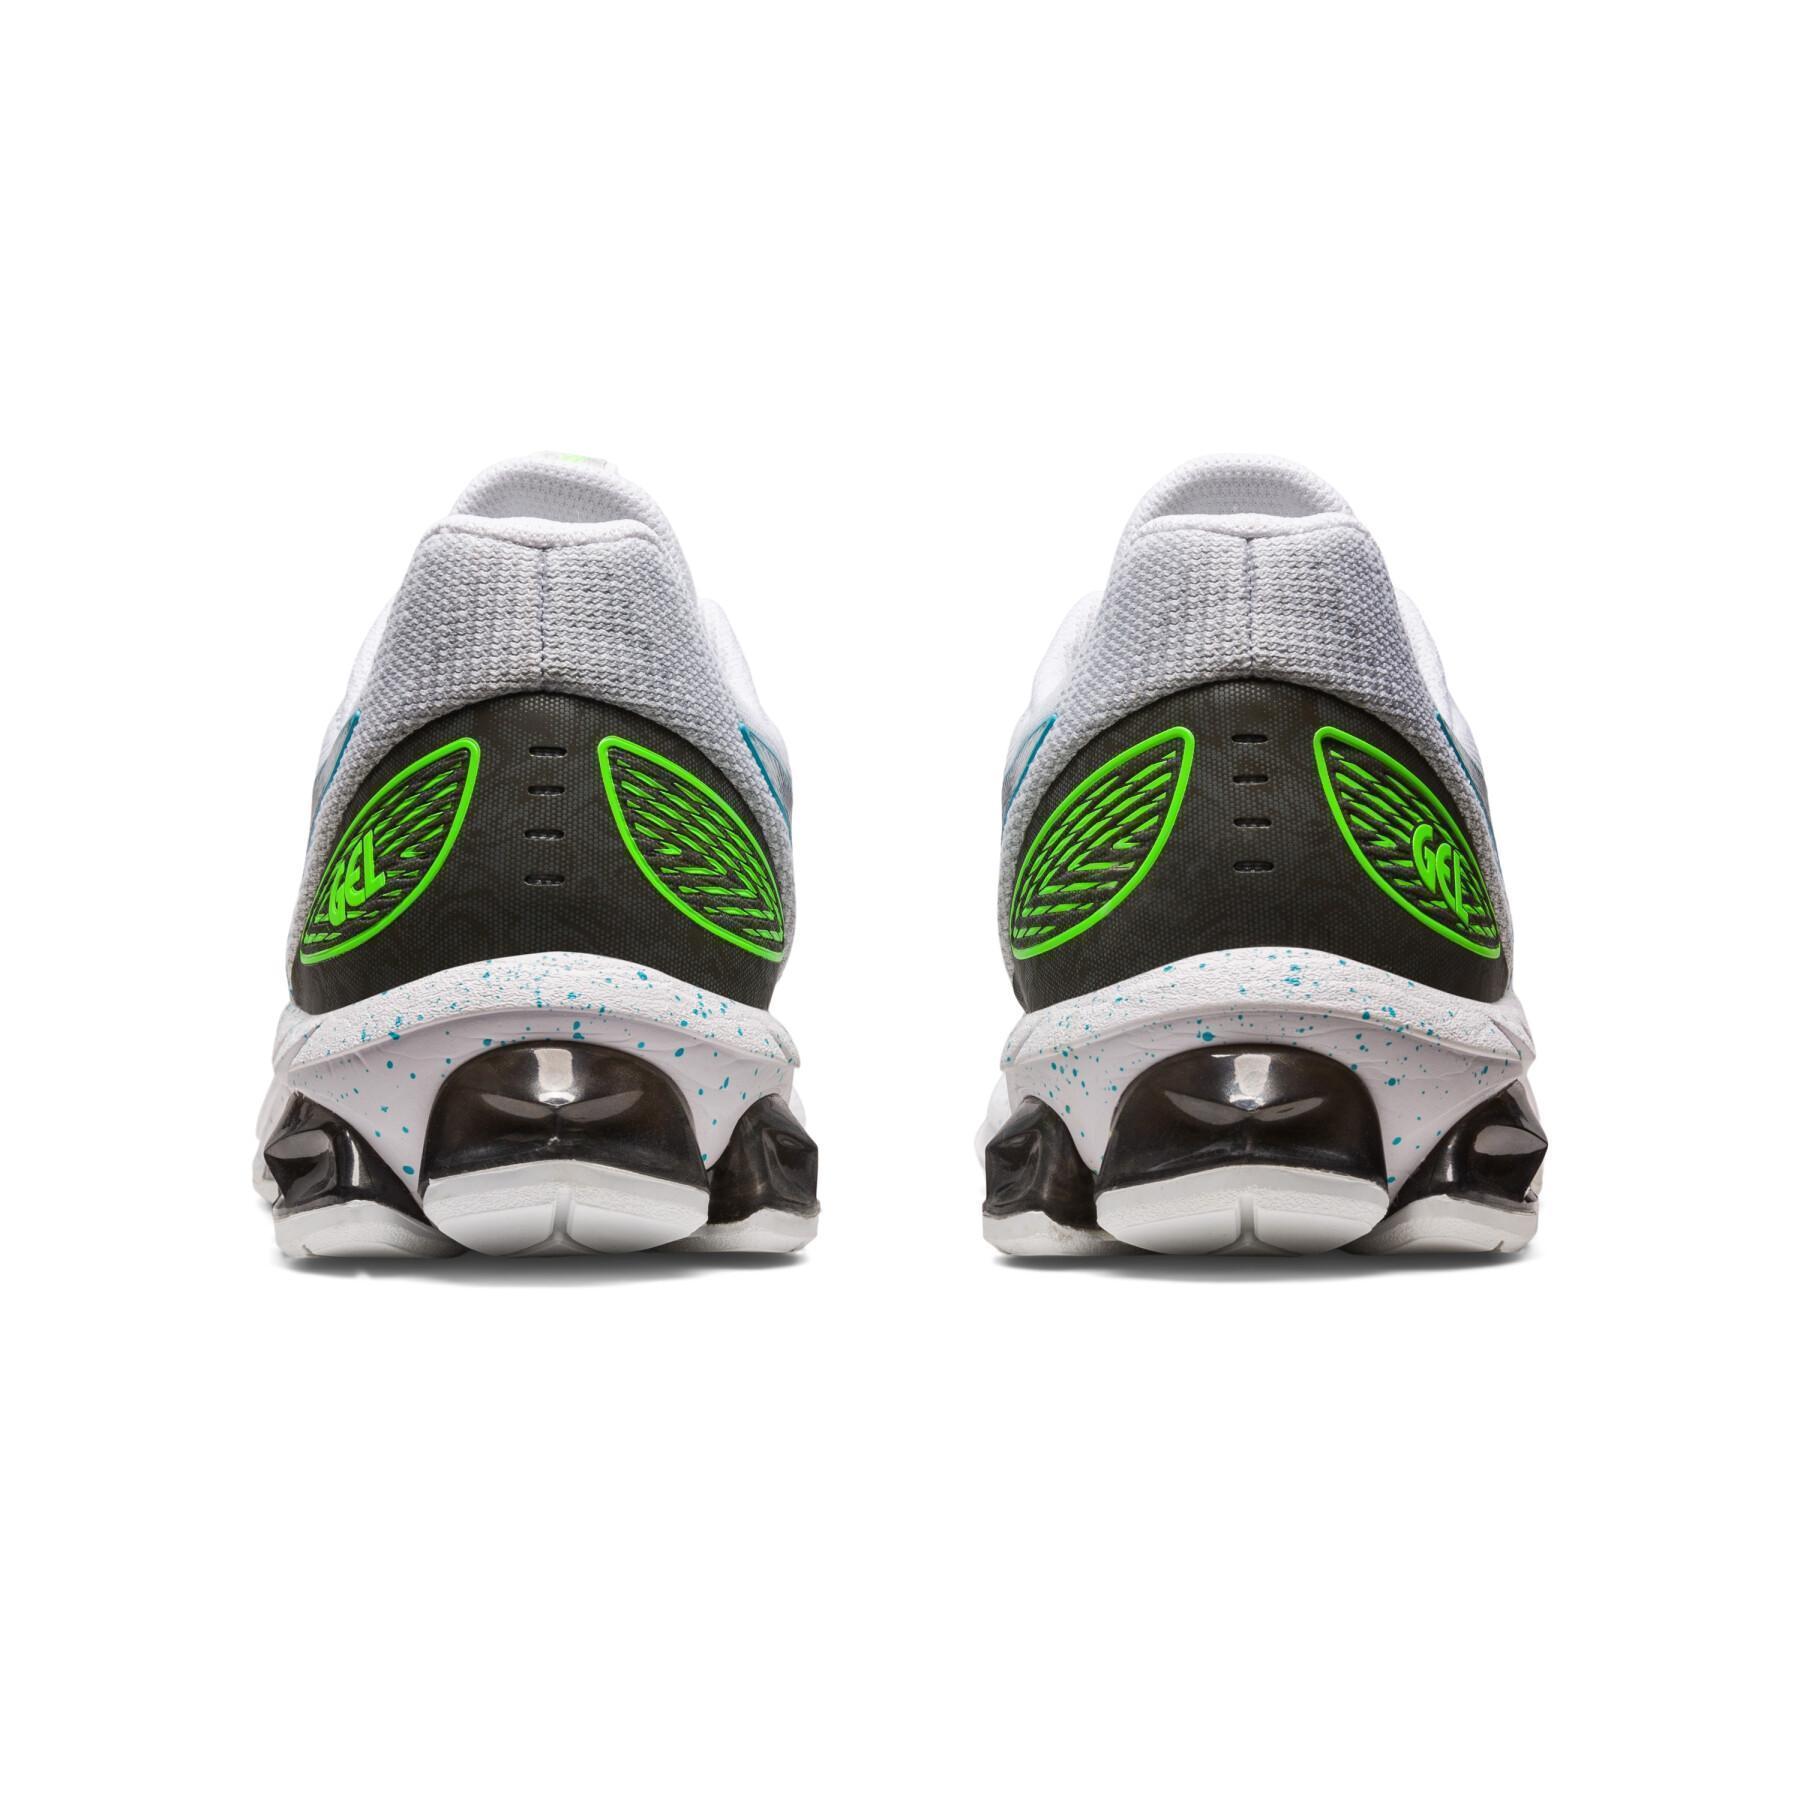 Sneakers Asics Gel-Quantum 180 VII